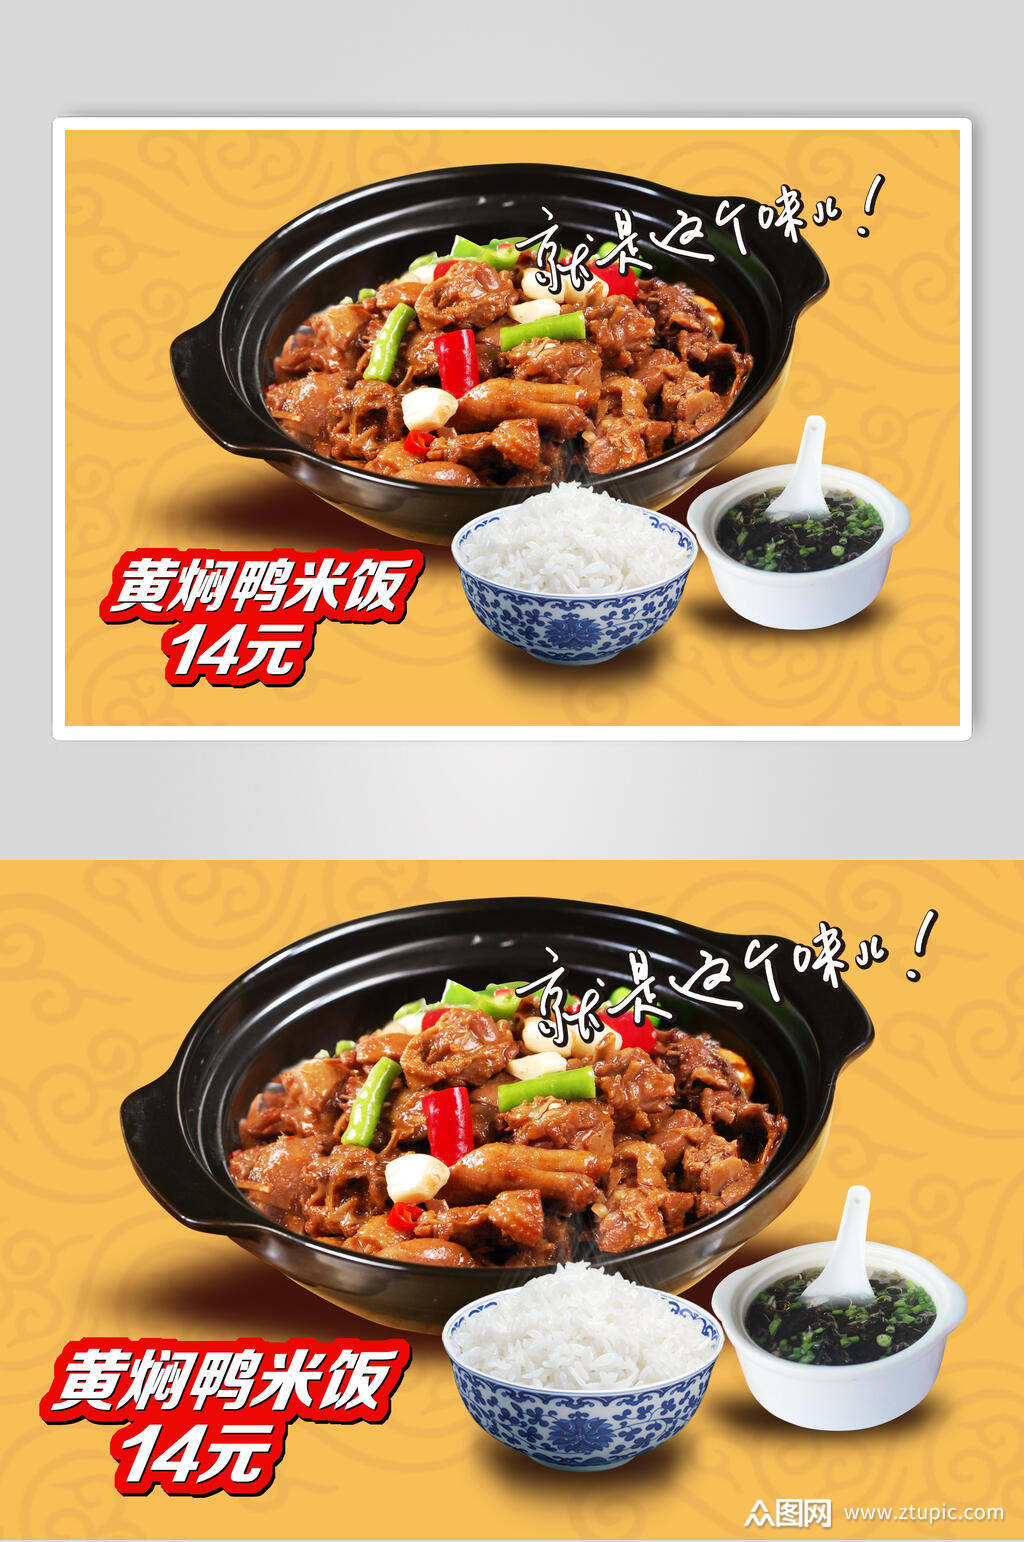 黄焖鸡米饭海报素材免费下载,本作品是由你好上传的原创平面广告素材